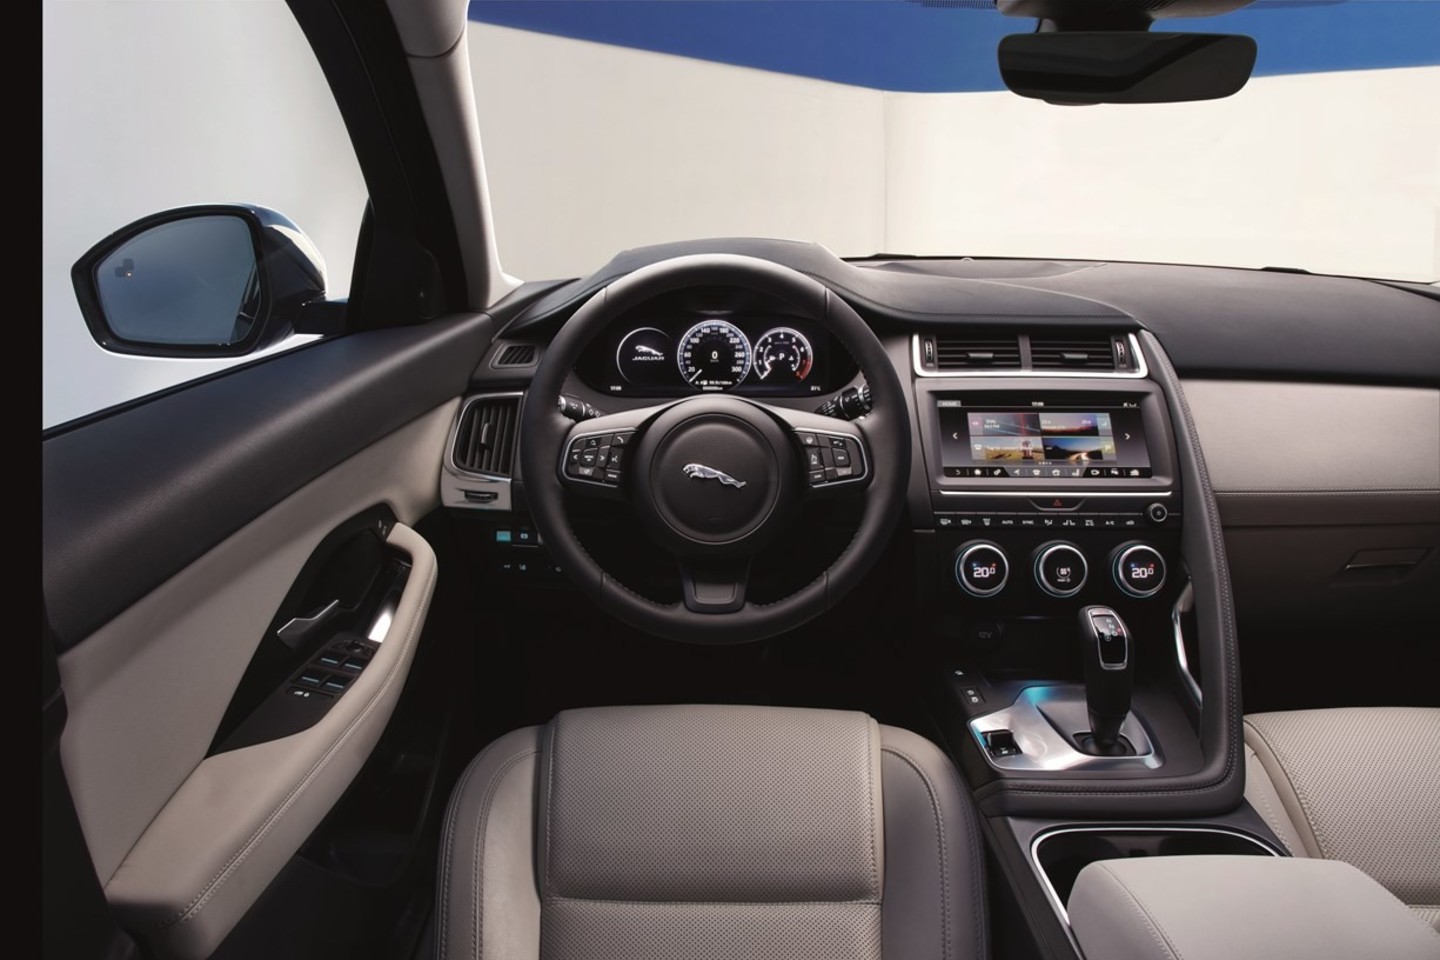 Ketvirtadienį Londone buvo pristatytas naujas „Jaguar E-Pace“ miesto visureigis. <br>Gamintojo nuotr.